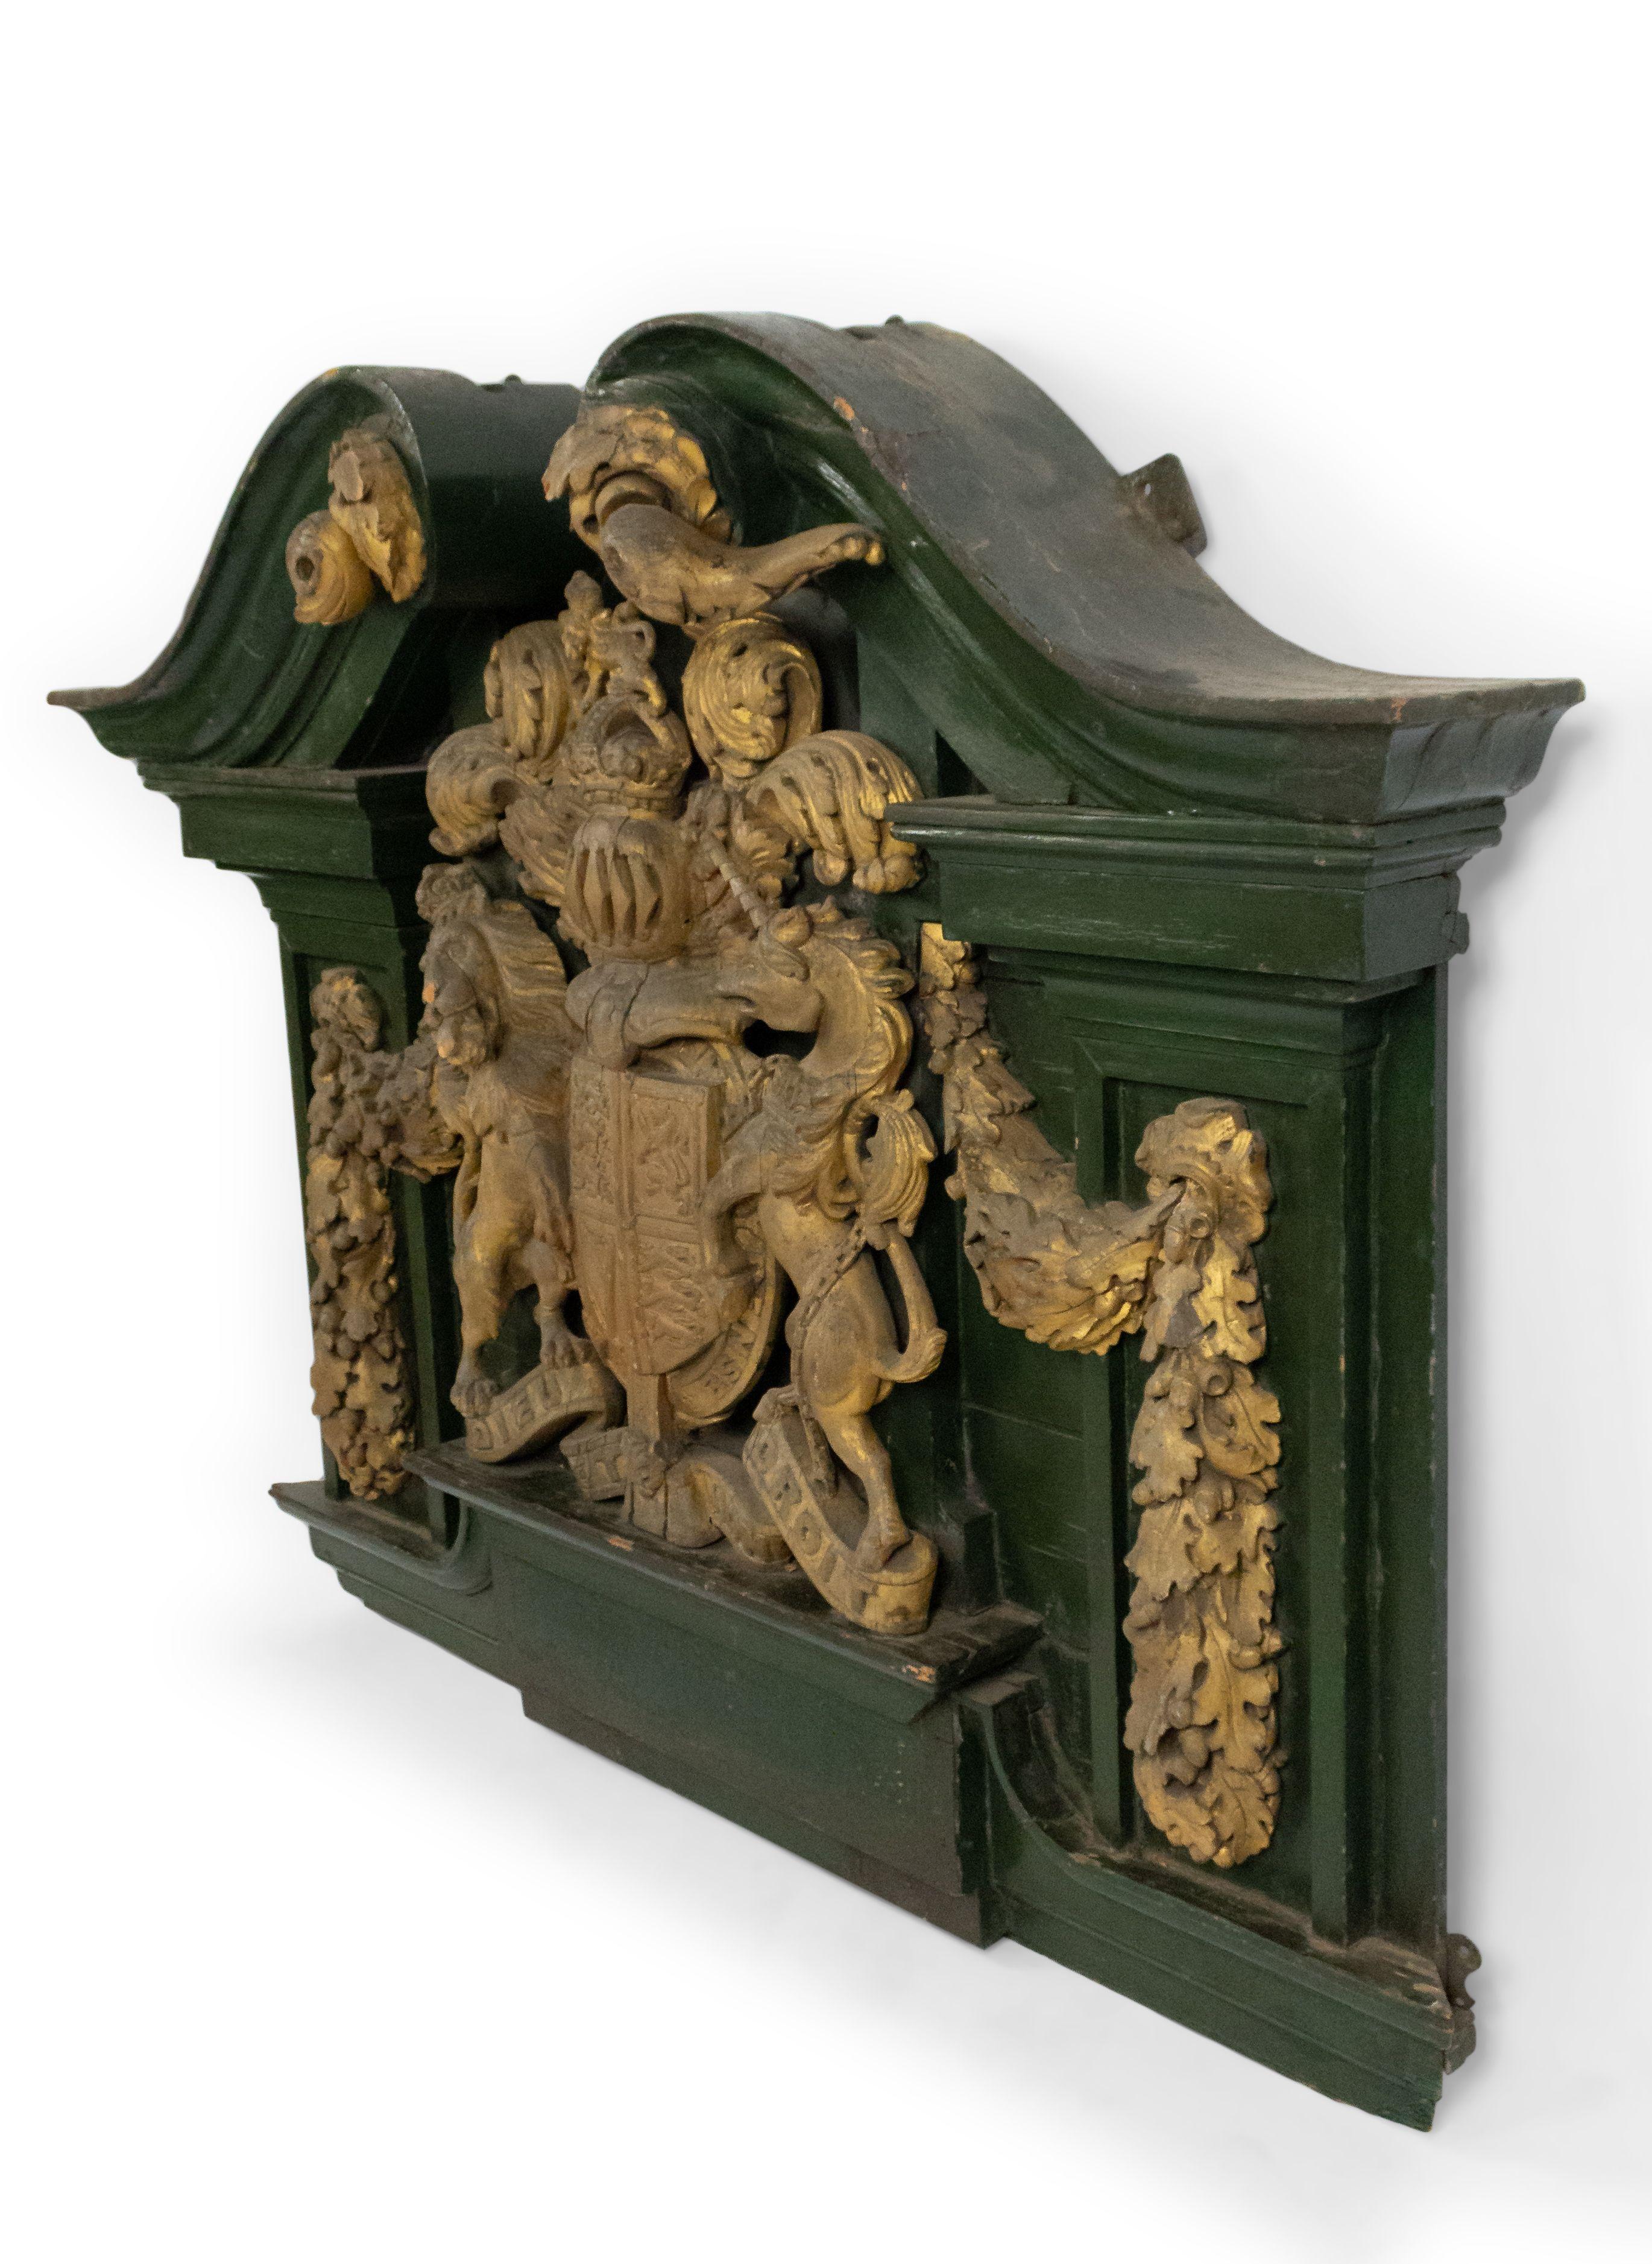 Englische georgianische (18/19. Jh.) grün bemalte und geschnitzte vergoldete Wandtafel mit Wappen mit Einhorn und Löwe und gebrochenem Giebelaufsatz.